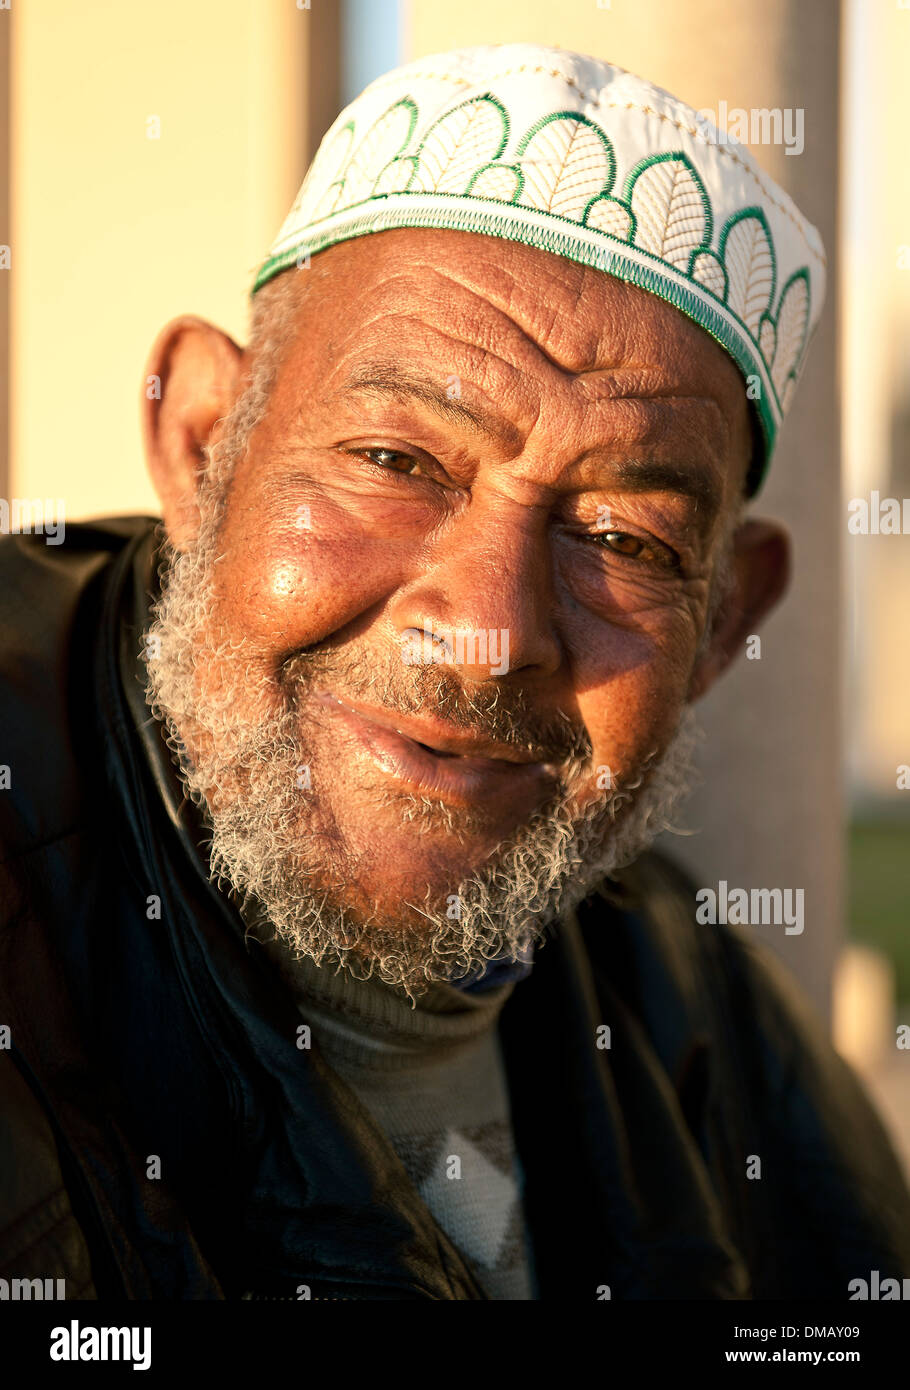 Des portraits d'hommes à l'extérieur de la Mosquée Hassan II, Casablanca, Maroc, Afrique Banque D'Images